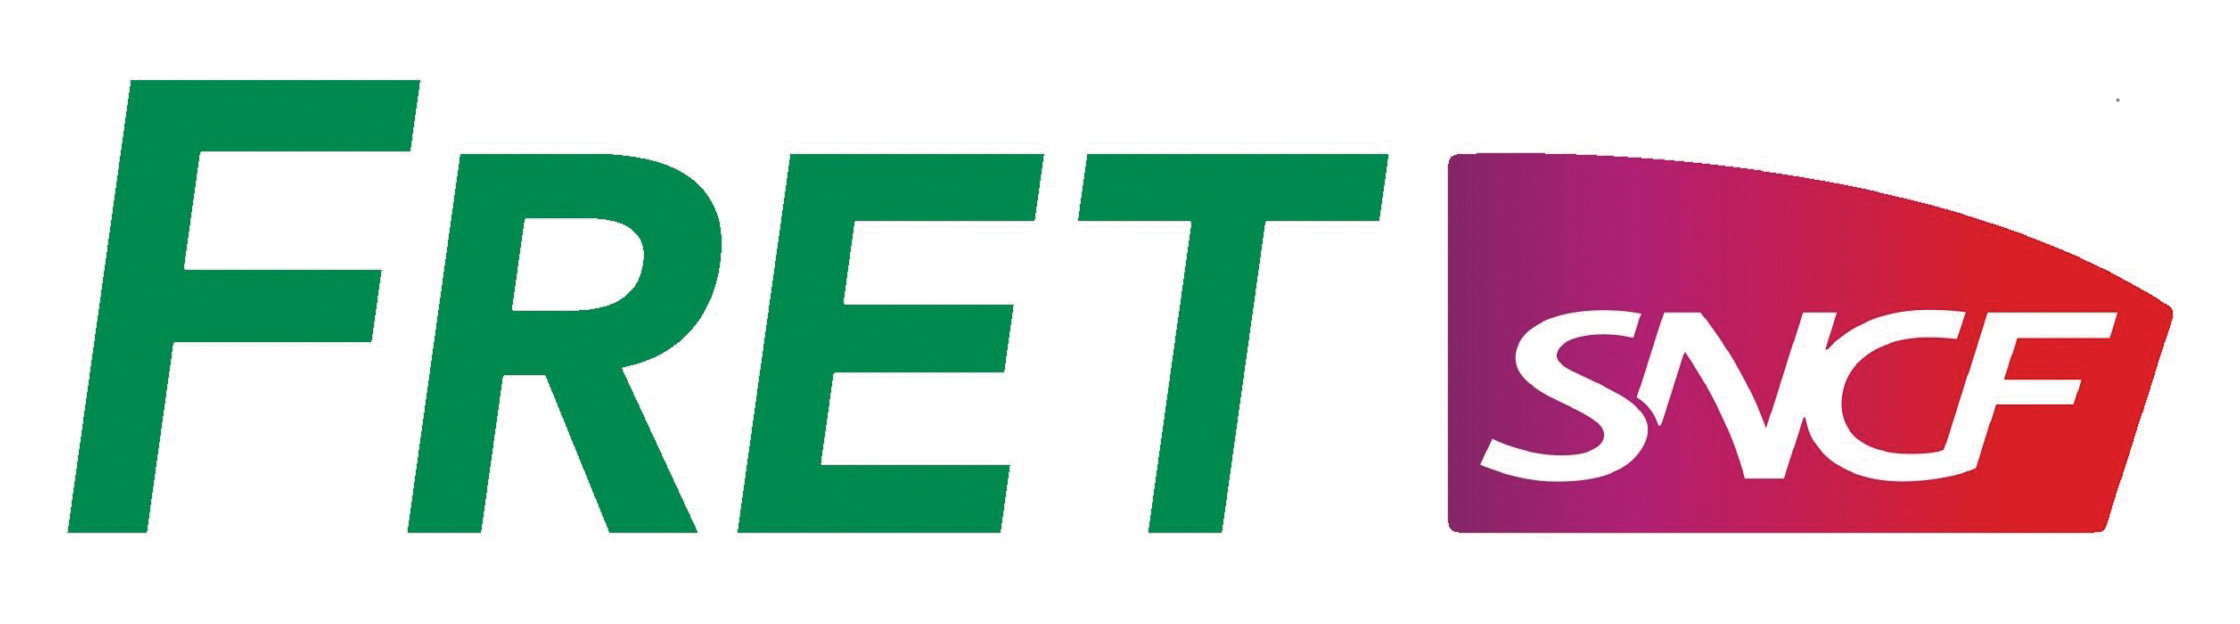 logo FRET SNCF